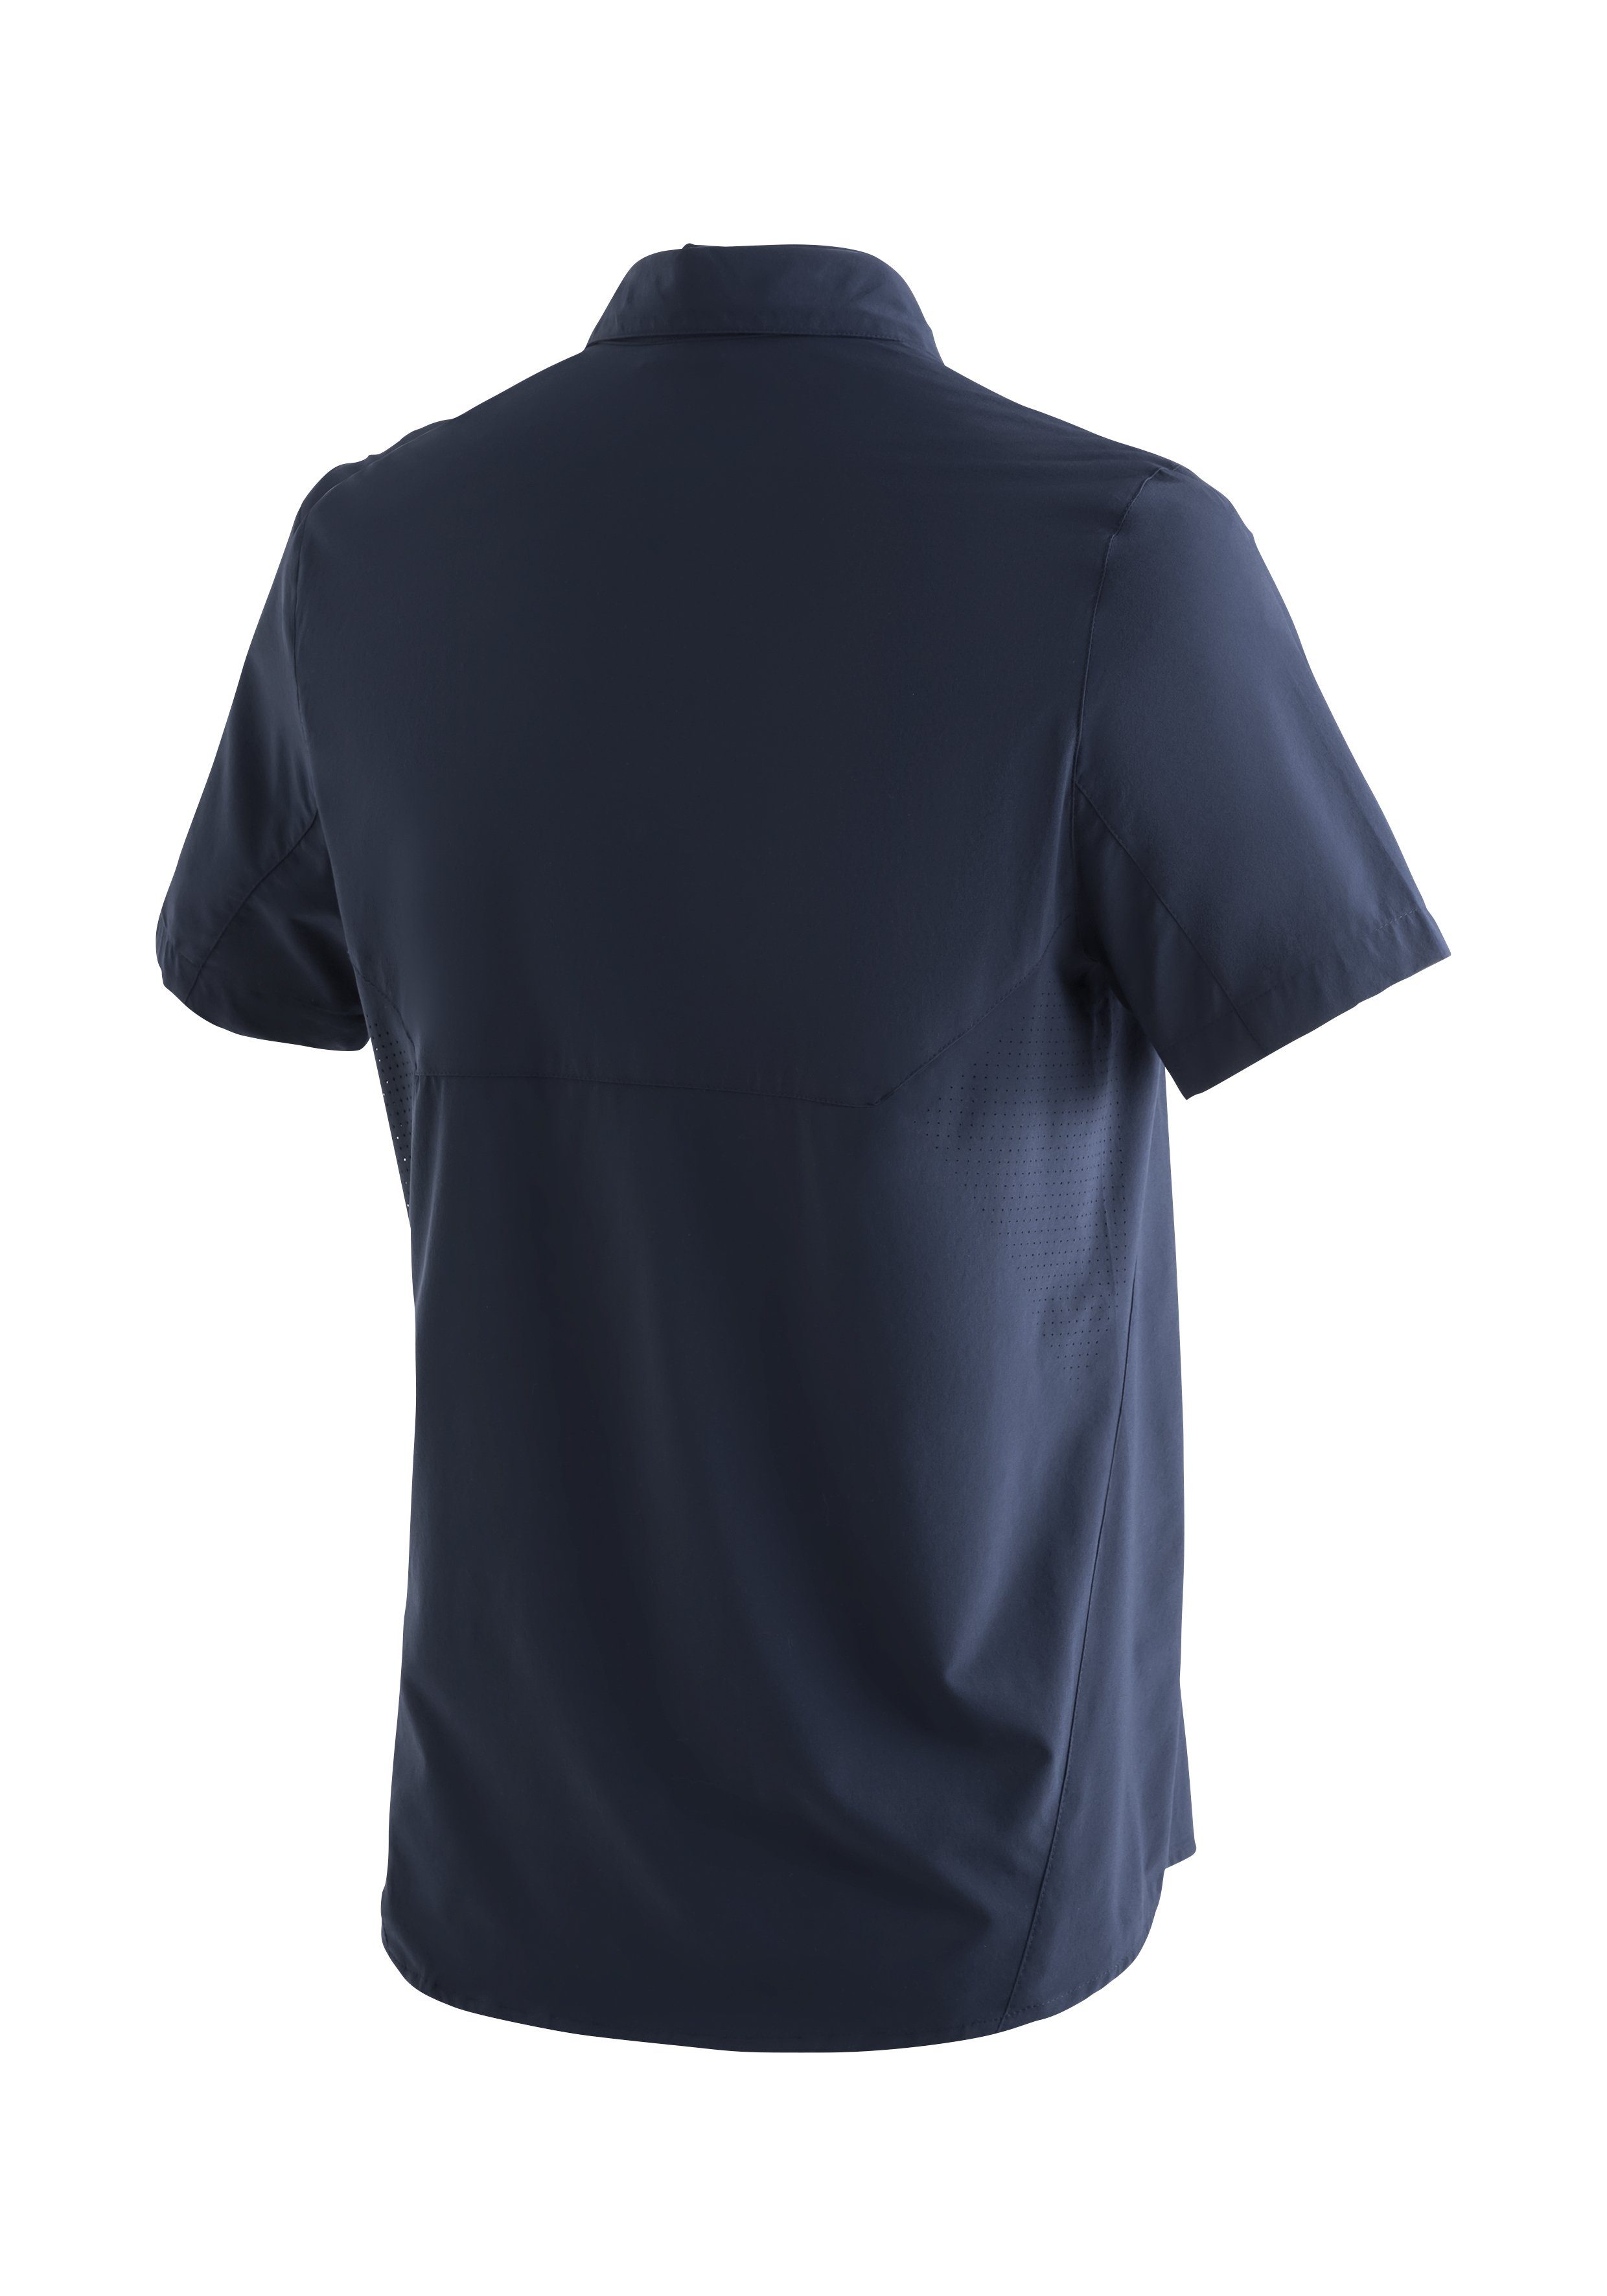 Maier MS/S Funktionshemd Sports Sonnenkragen Tec Sinnes mit Leichtes, Trekkinghemd elastisches dunkelblau